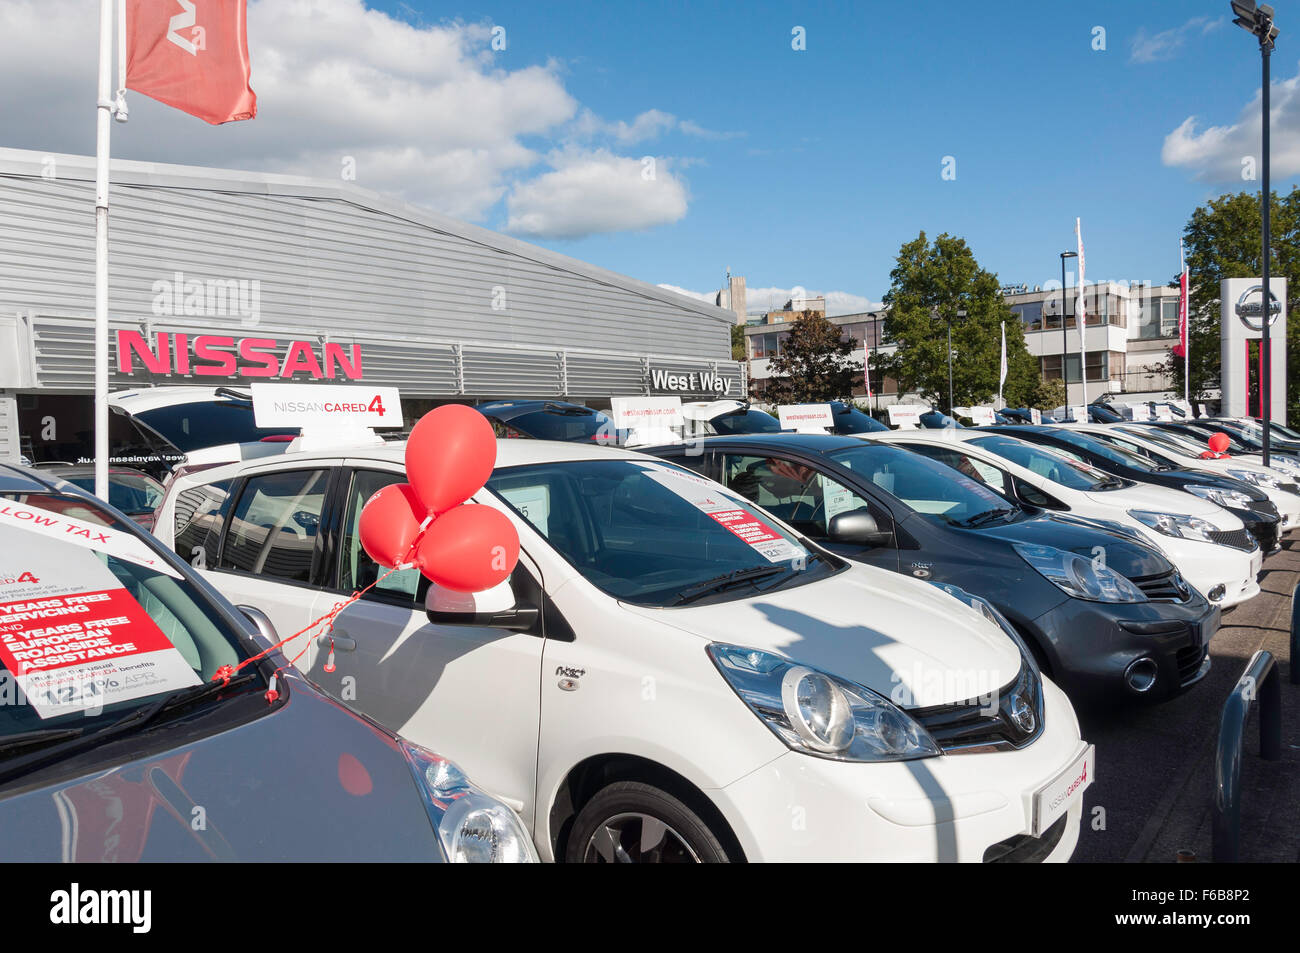 West Way Nissan curato4 Vendita di auto usate cantiere, Windsor, Aldershot, Hampshire, Inghilterra, Regno Unito Foto Stock